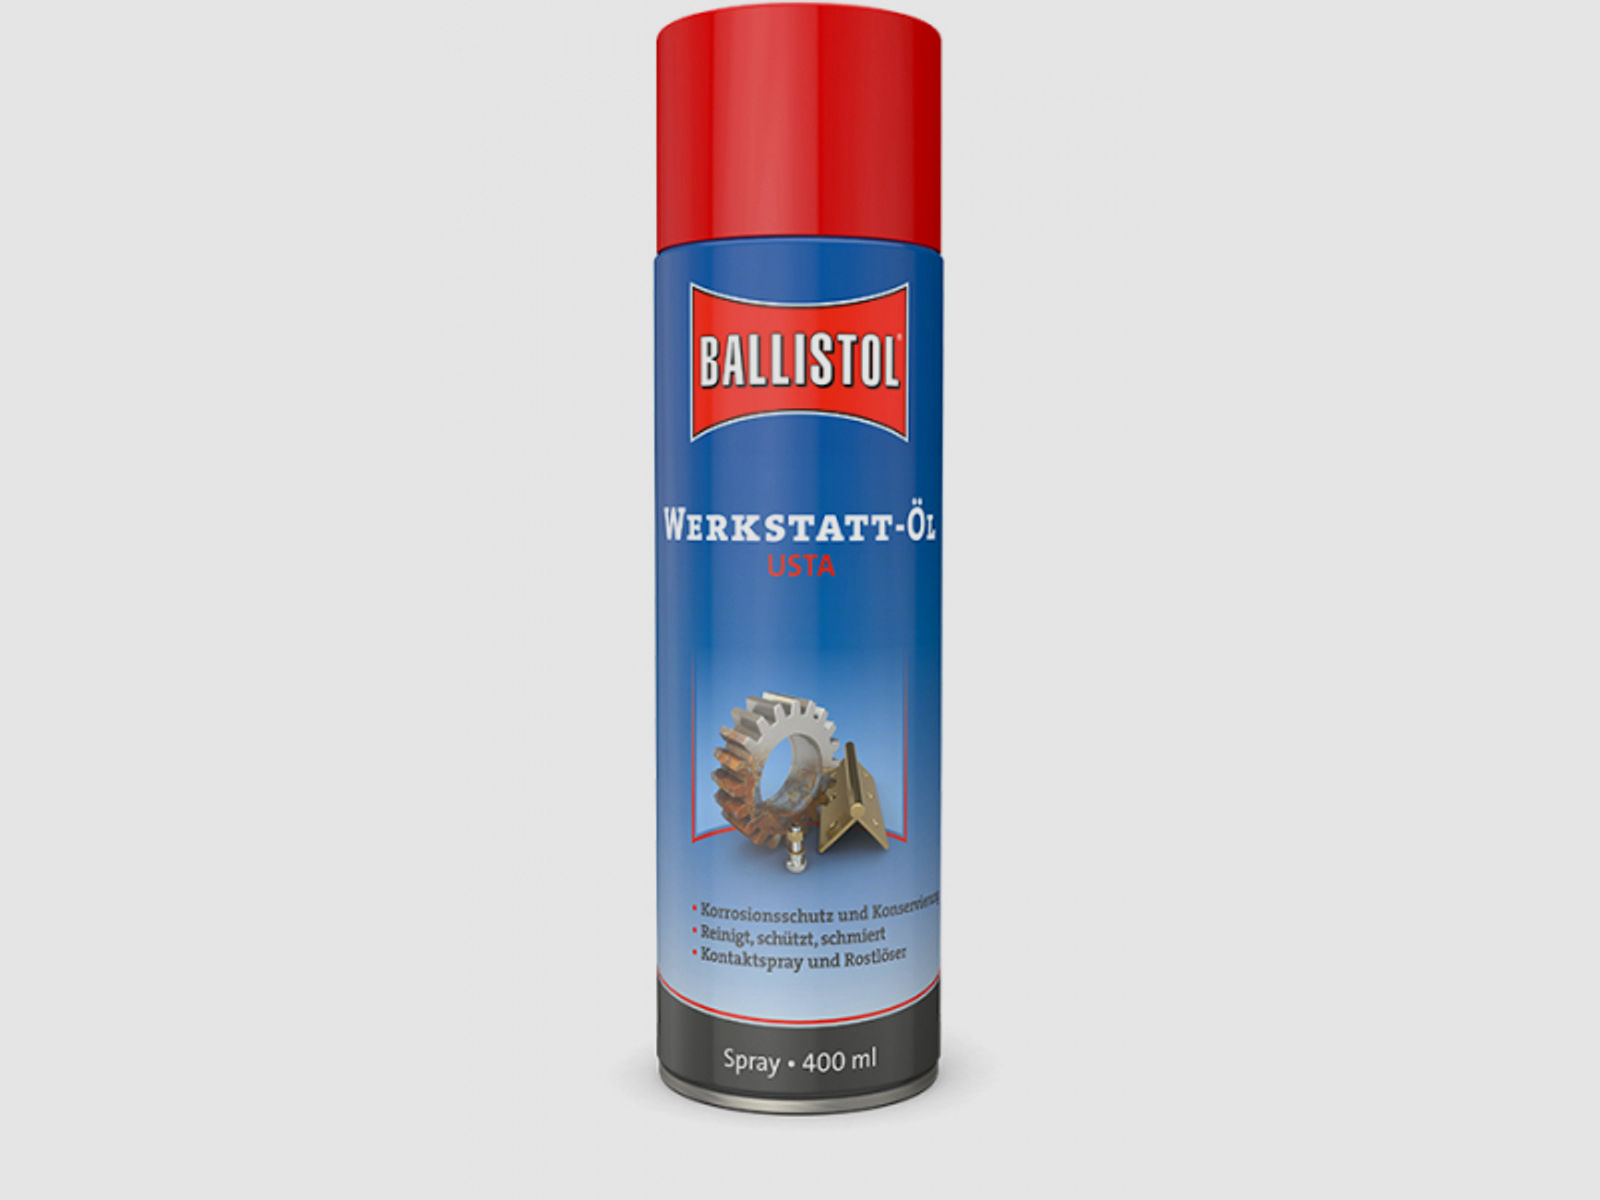 Ballistol USTA Werkstattöl 400ml Spray #22960 | Reinigt, entfernt Flugrost, schützt vor Korossion